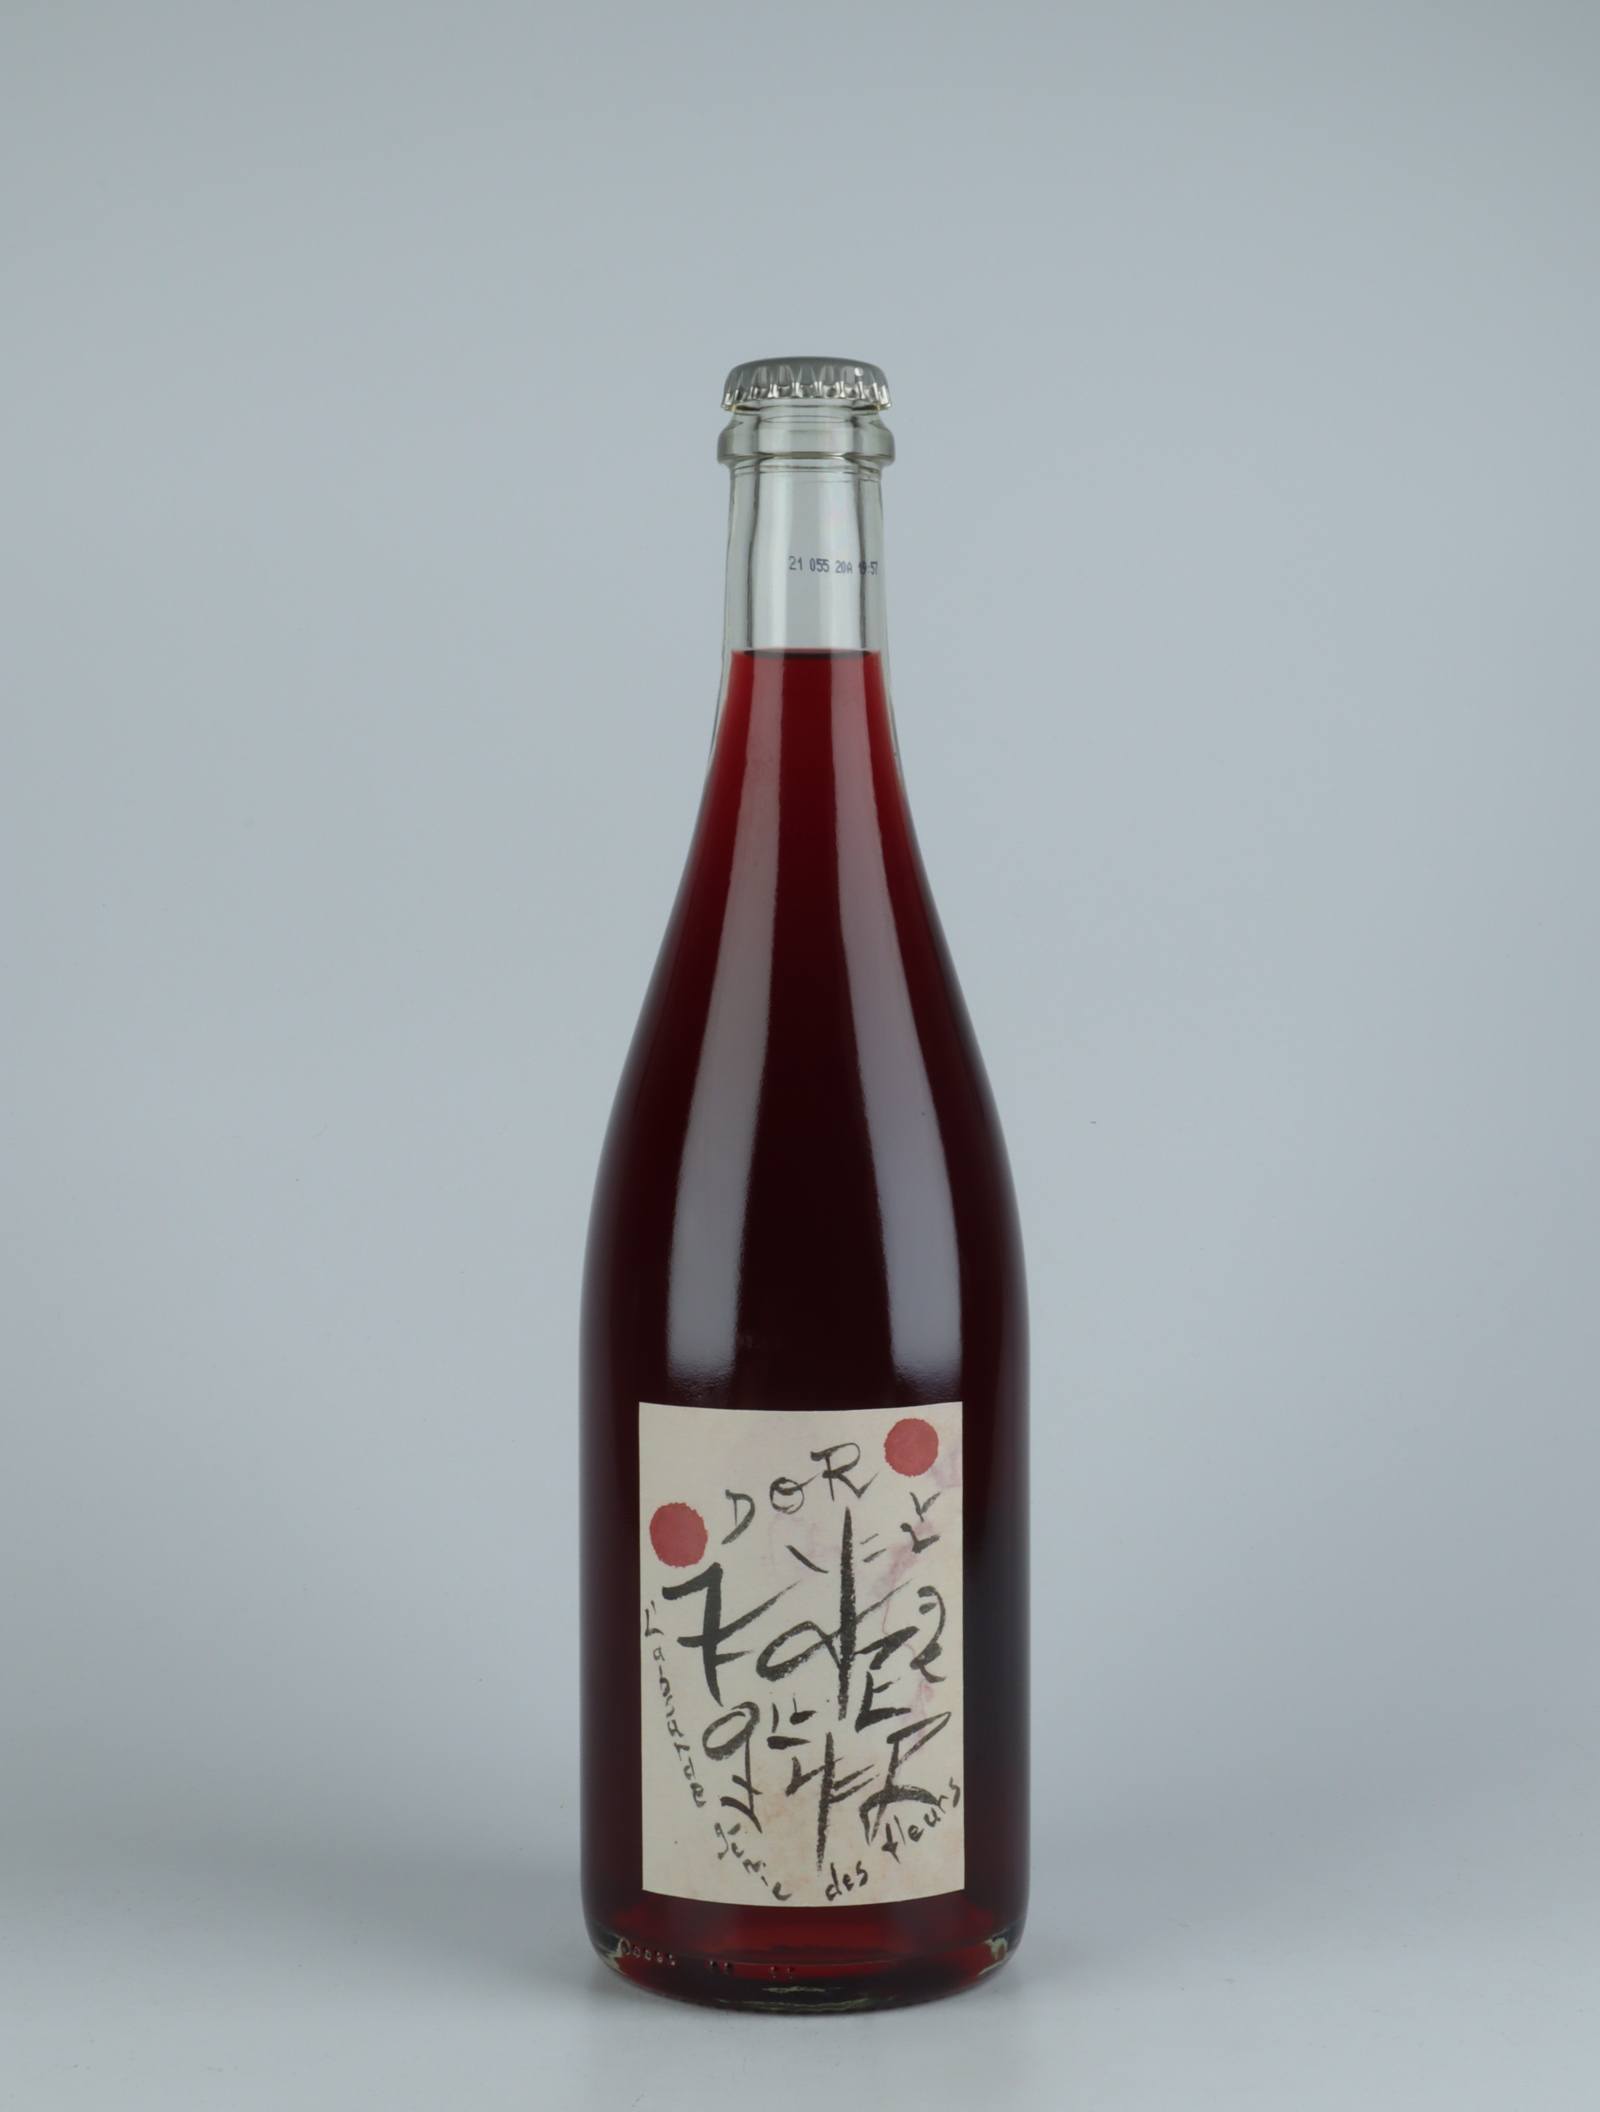 En flaske 2020 Dor Rødvin fra Absurde Génie des Fleurs, Languedoc i Frankrig